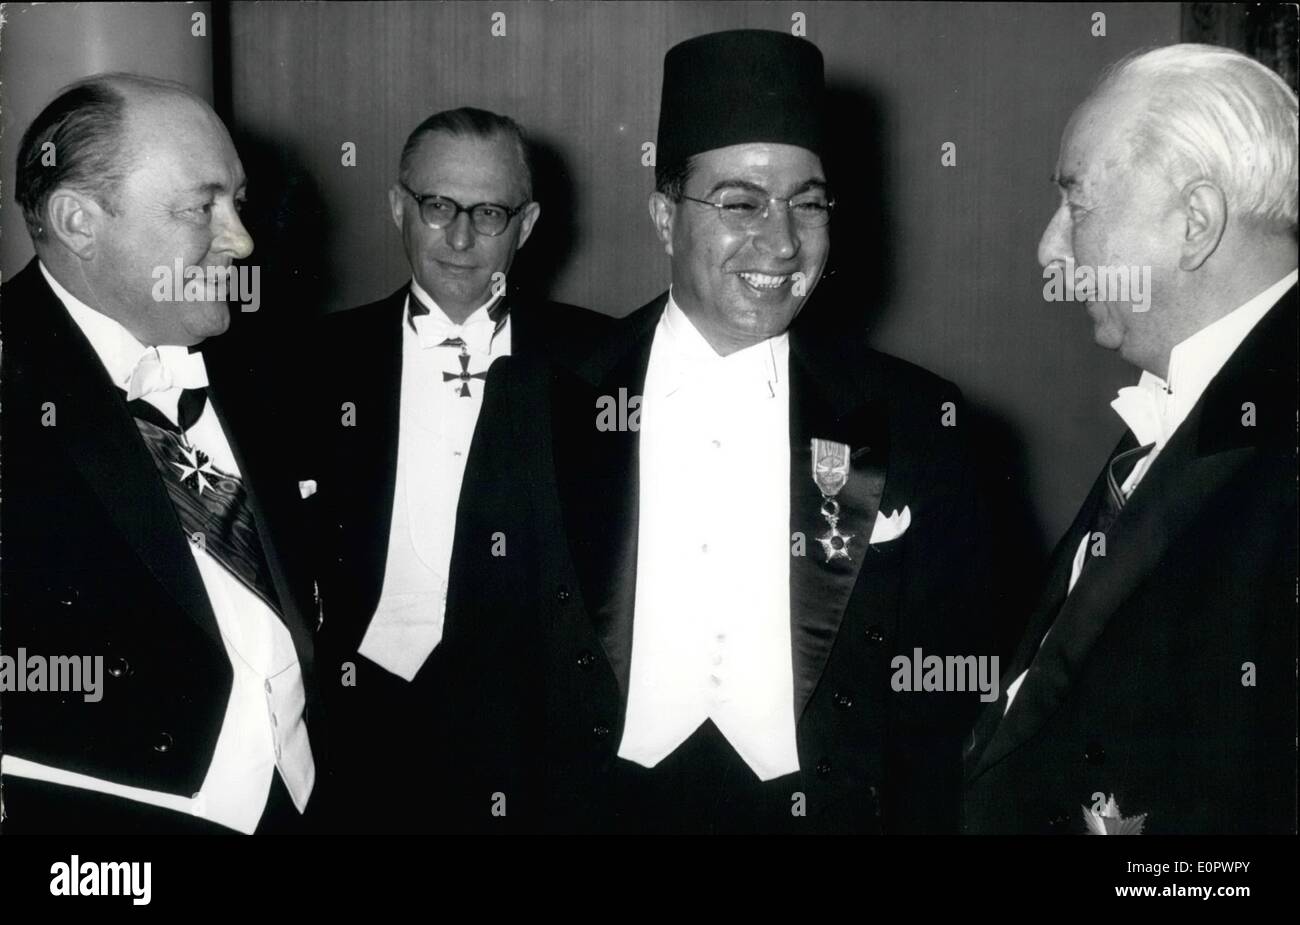 01 janvier 1957 - Le nouvel ambassadeur du Maroc, M. Abdellatif Ben Jelloun à la livraison le président M. Heuss l'identification. OPS : Ministre von Merkatz, l'ambassadeur M. Ben Jelloun et président M. Heuss. Banque D'Images